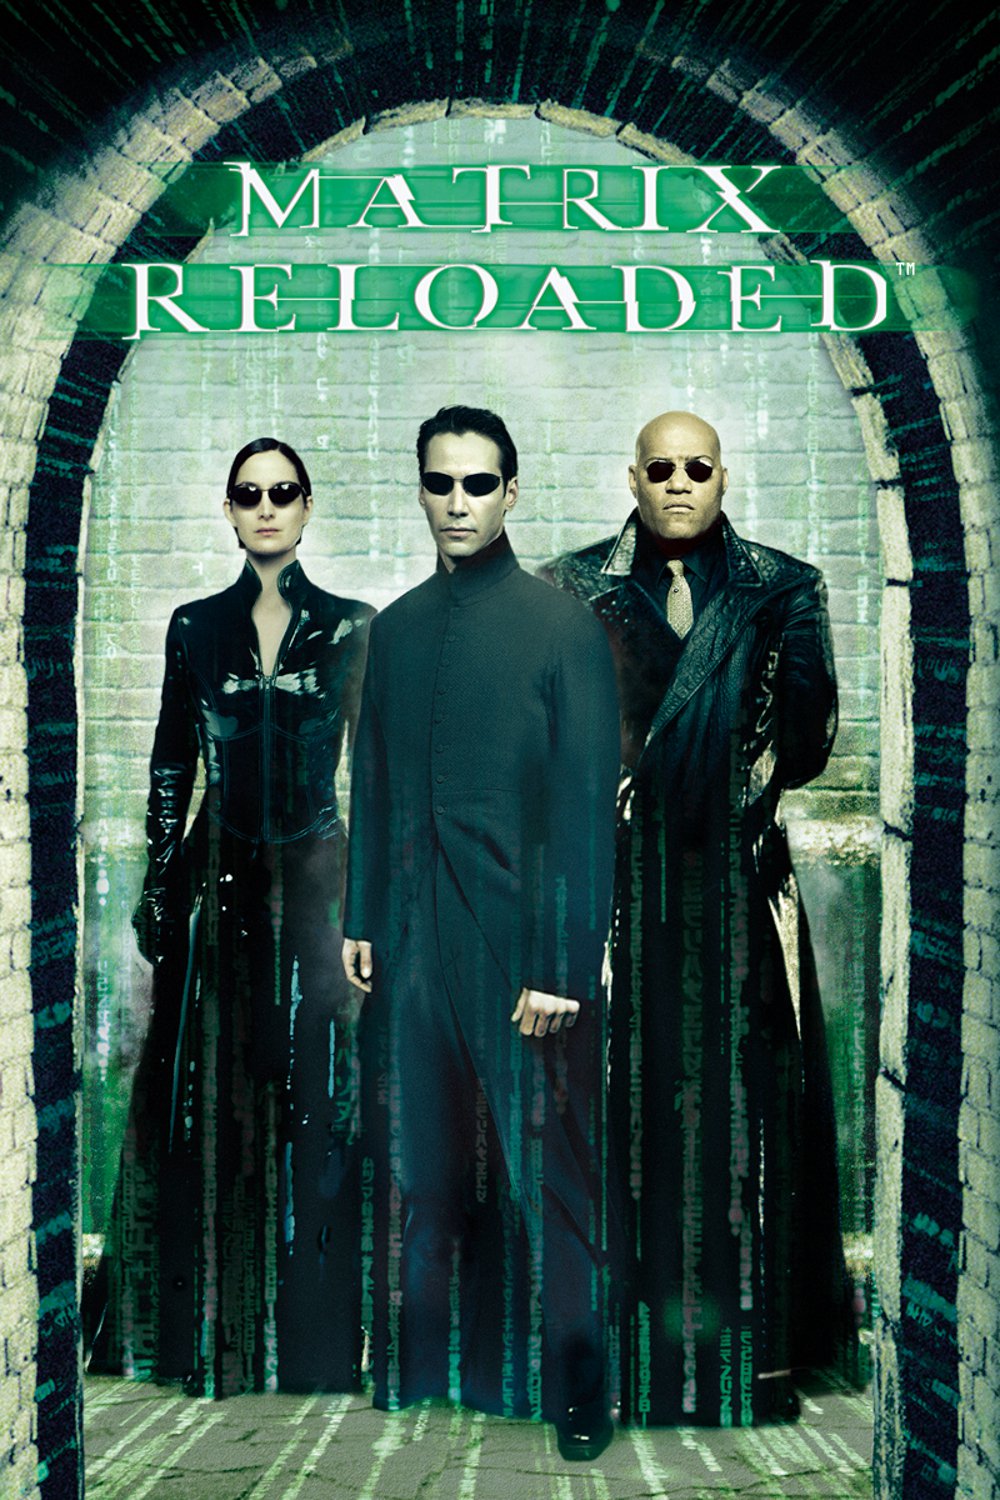 Plakat von "Matrix Reloaded"